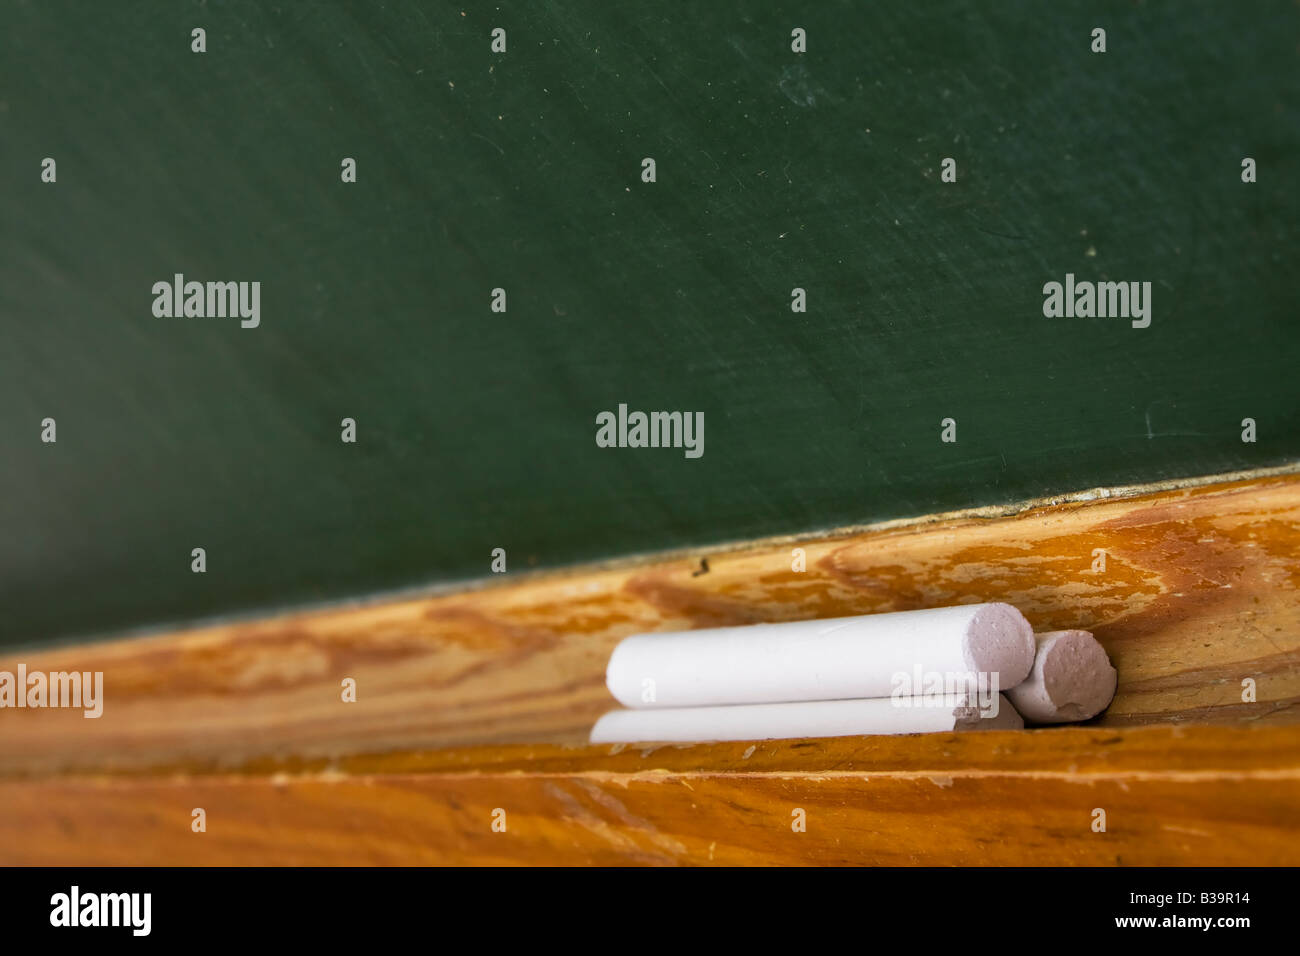 Dettaglio di chalk bastoni in una scheda della scuola Foto Stock